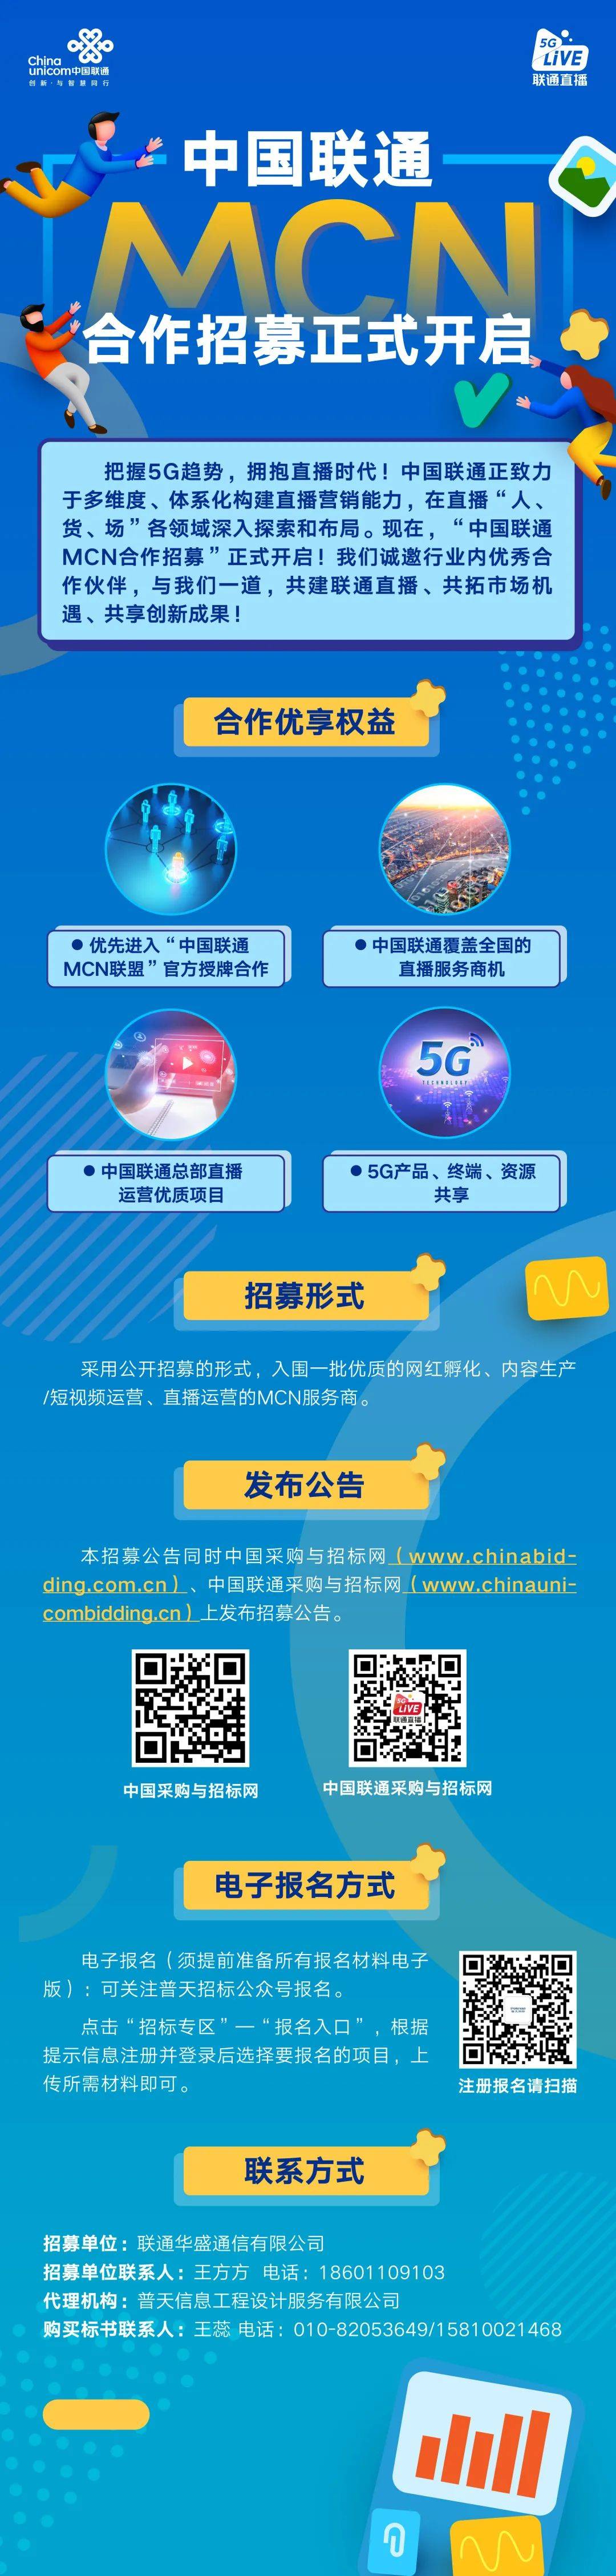 中国联通官网手机资讯中国联通手机网上营业厅-第1张图片-平心在线